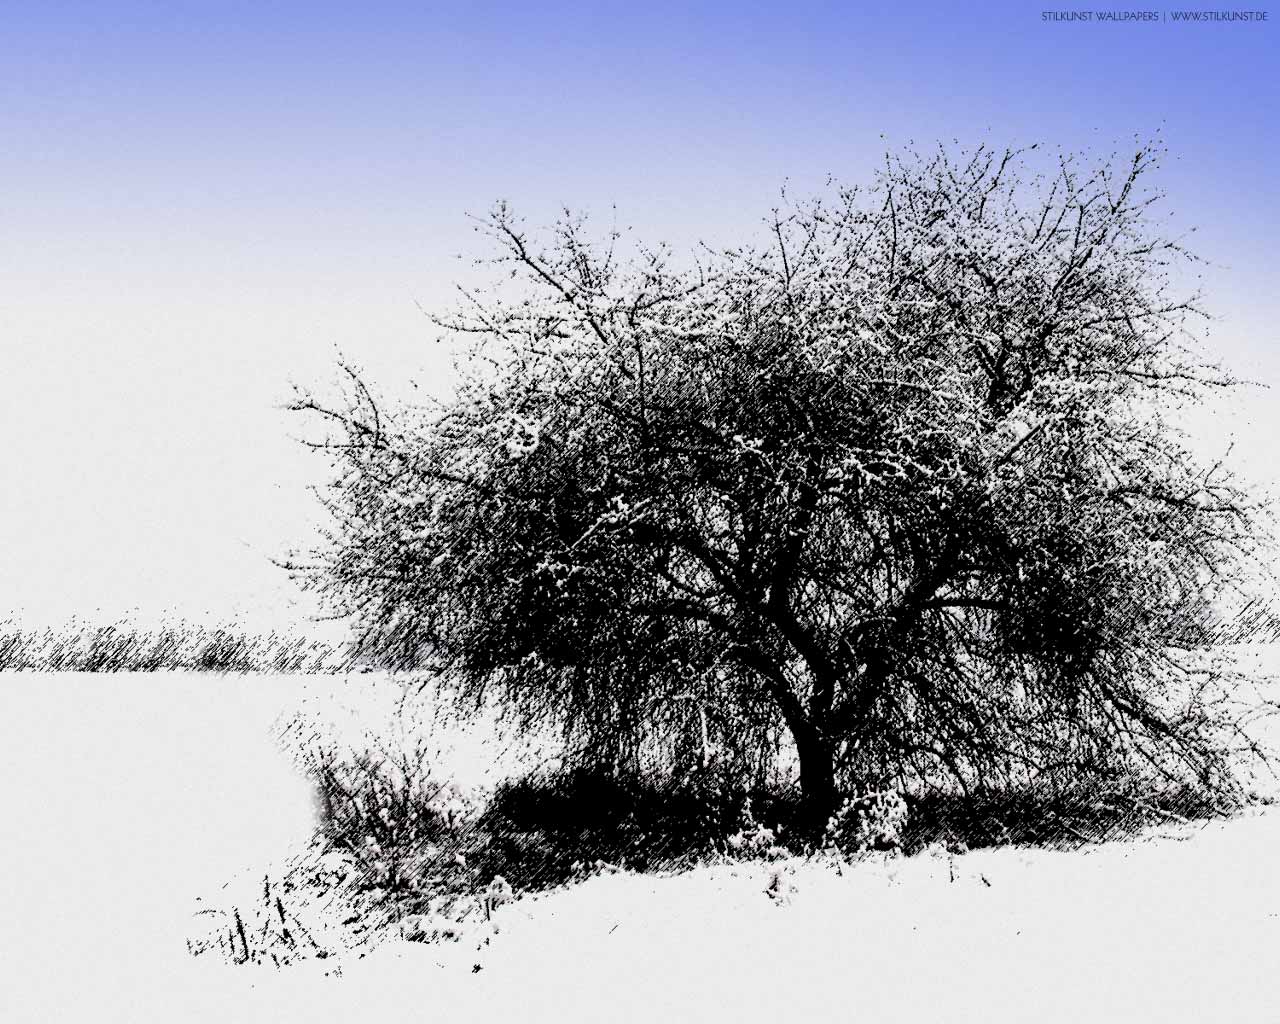 Winterlandschaft | 1280 x 1024px | Bild: ©by Sabrina | Reiner | www.stilkunst.de | Lizenz: CC BY-SA